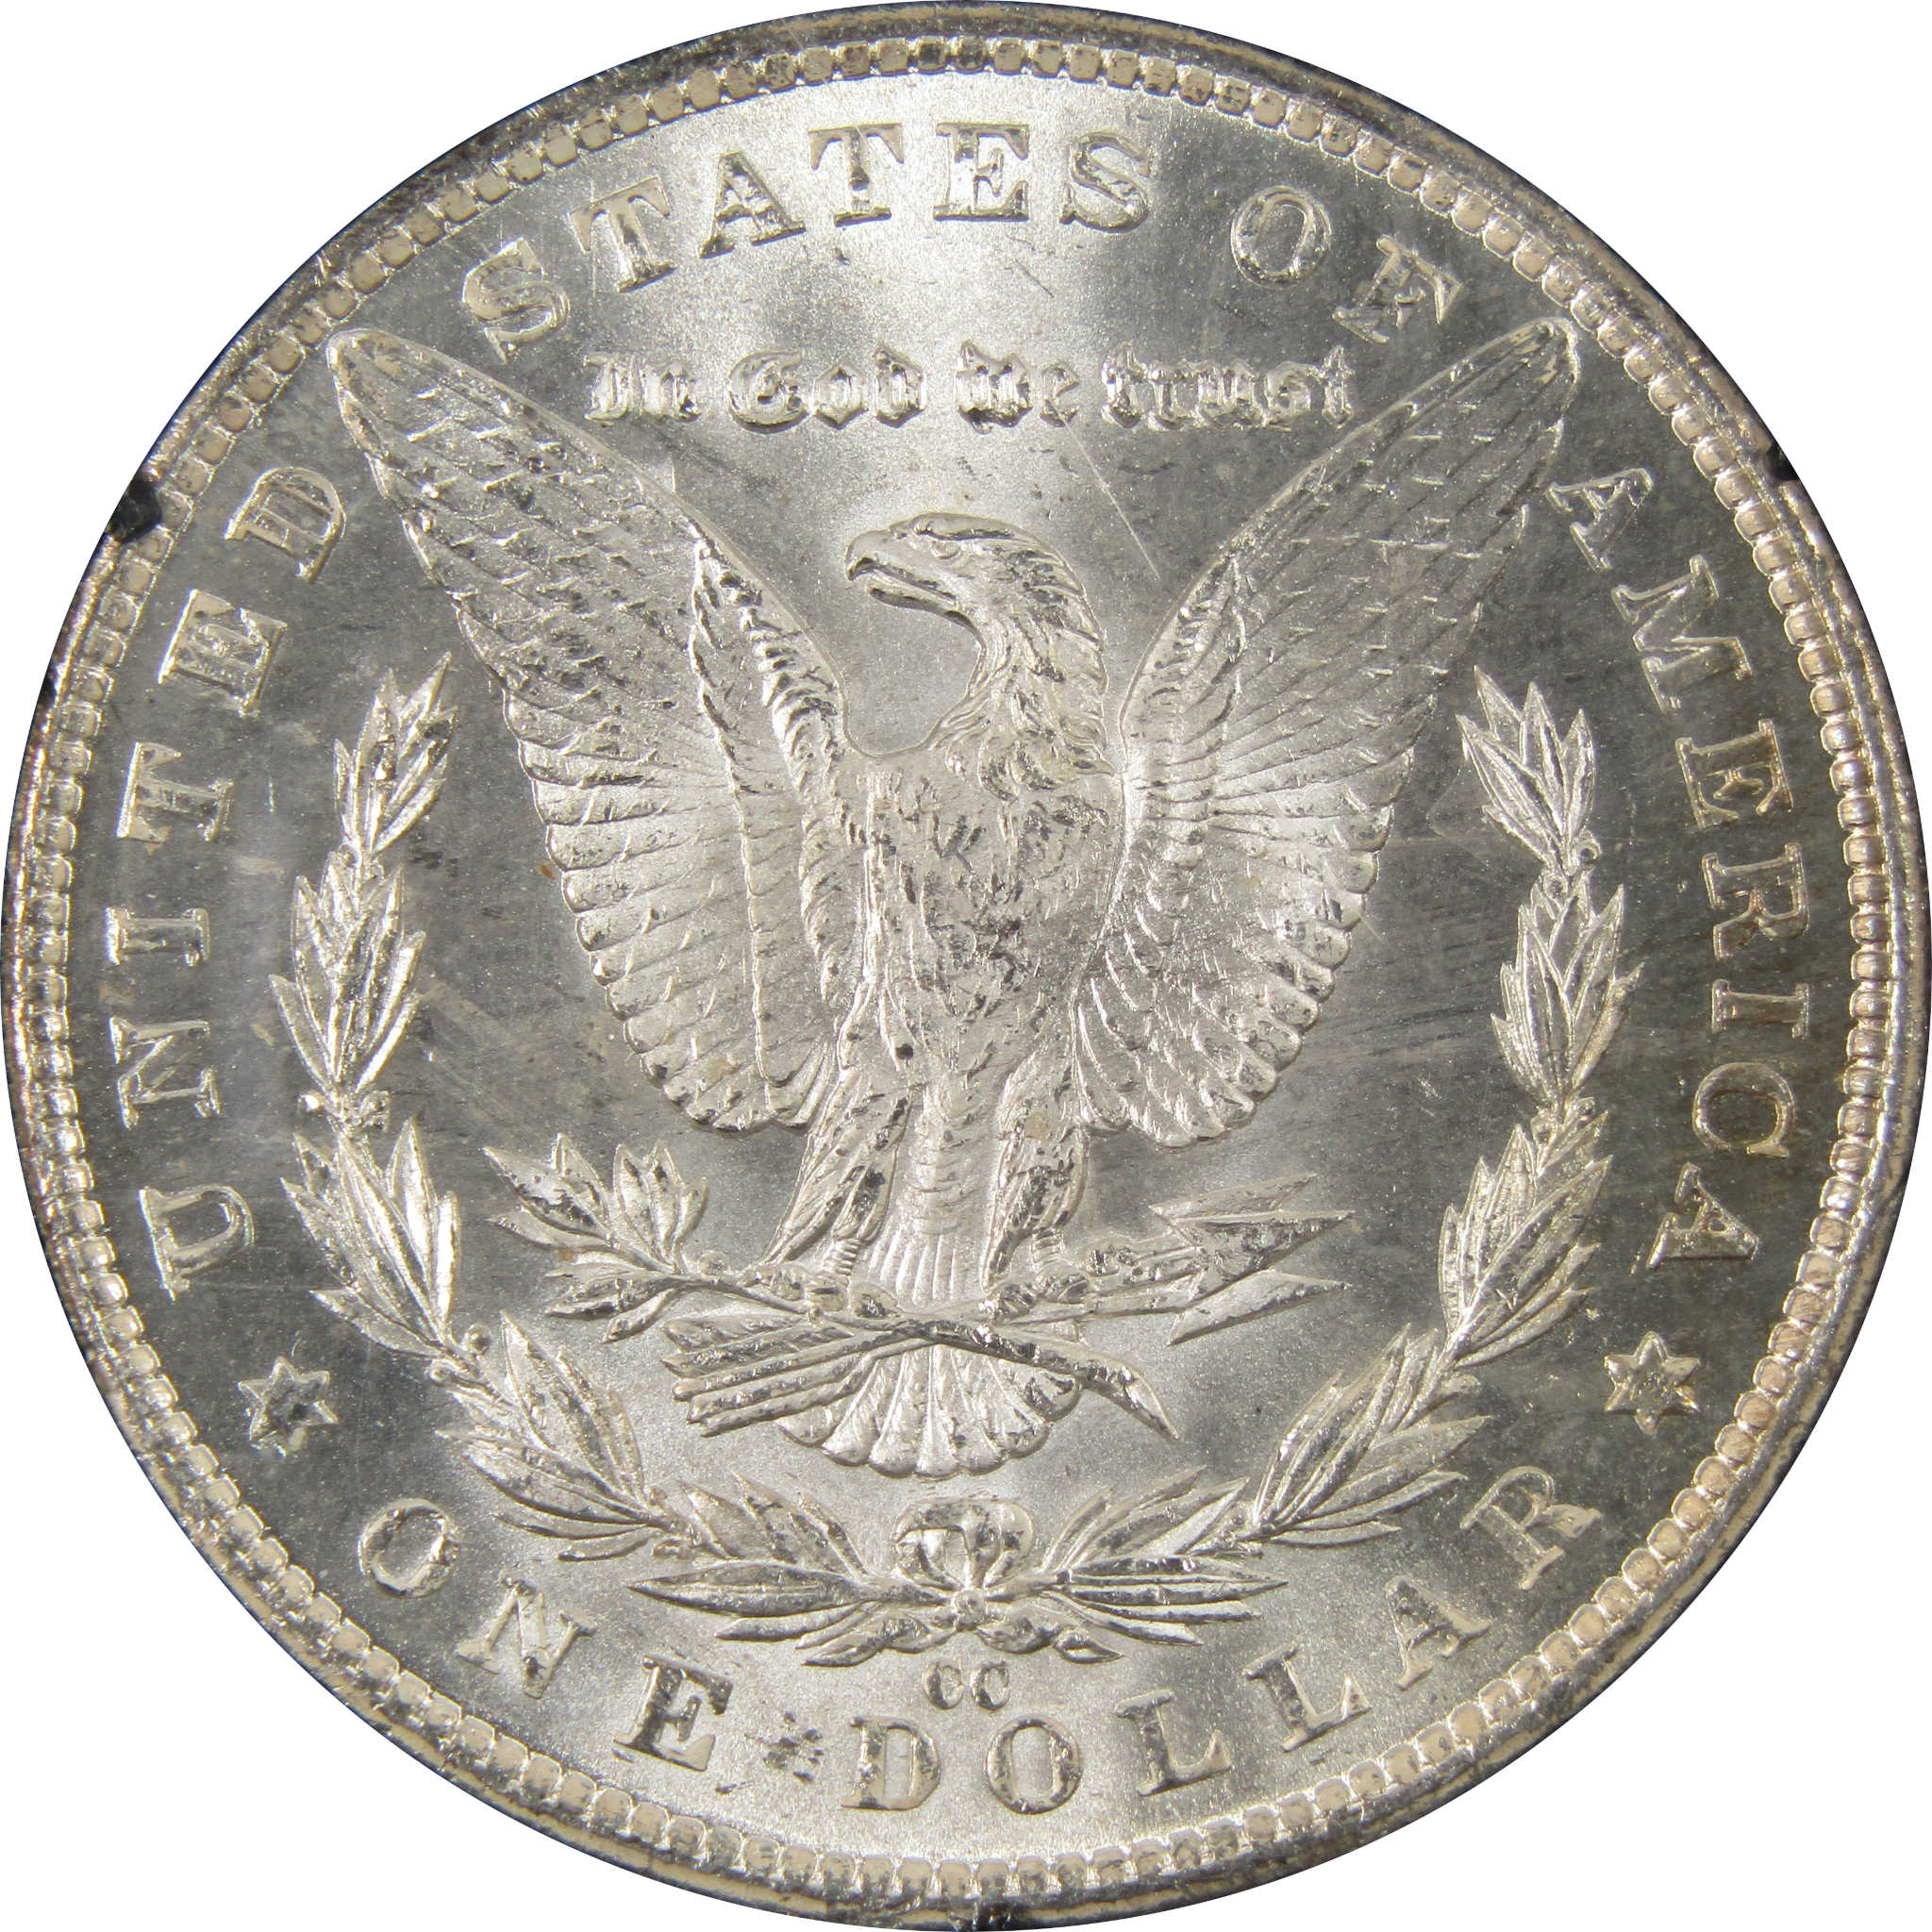 1882 CC GSA Morgan Dollar BU Uncirculated Silver $1 Coin SKU:I9442 - Morgan coin - Morgan silver dollar - Morgan silver dollar for sale - Profile Coins &amp; Collectibles